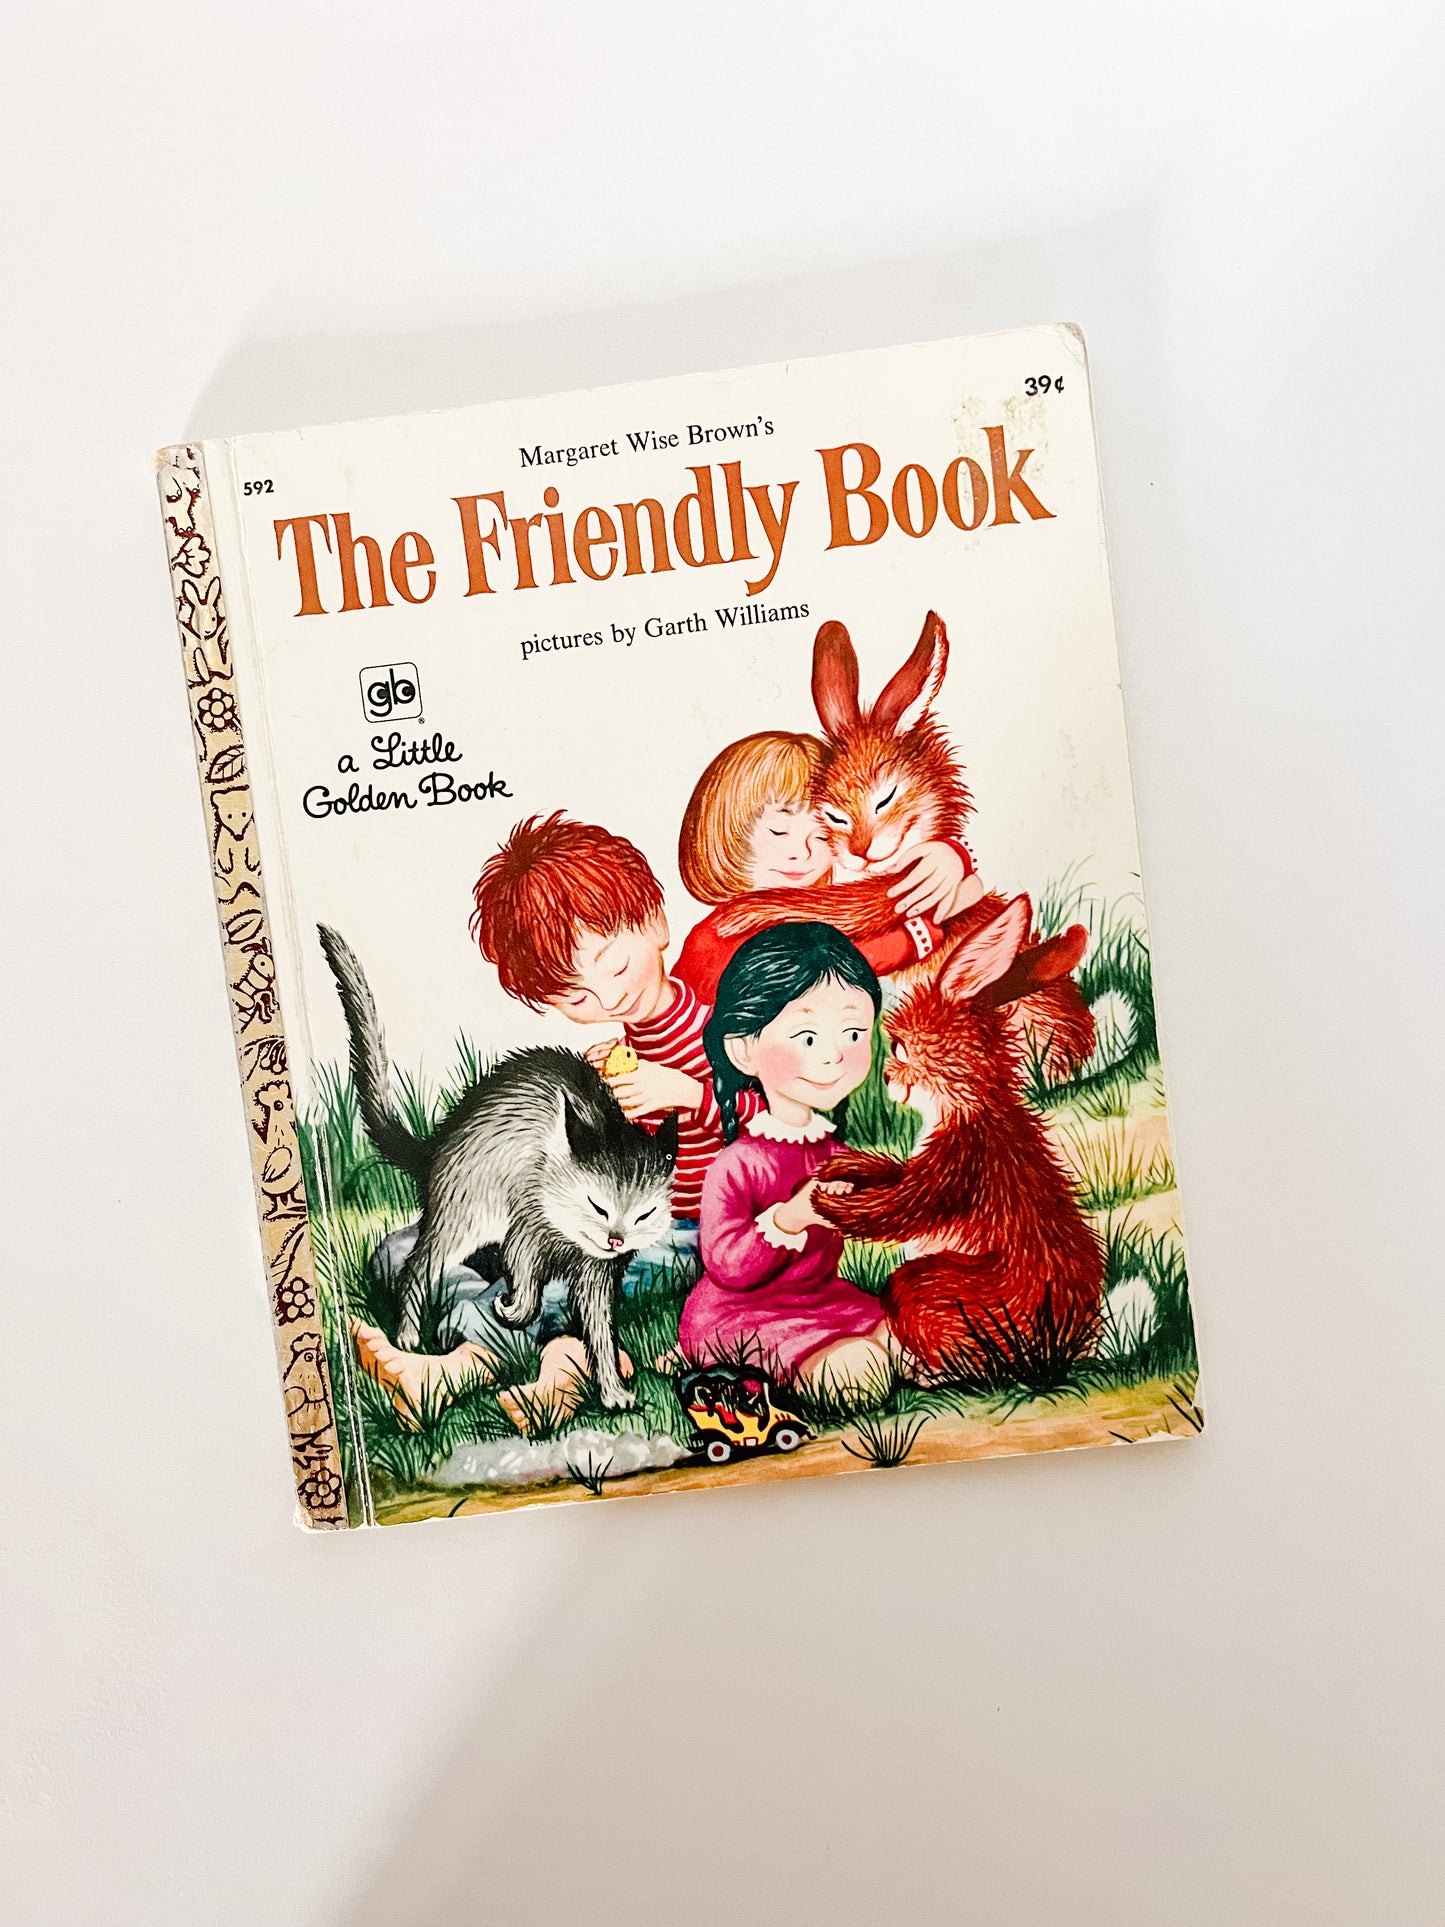 Little Golden Book “The Friendly Book”